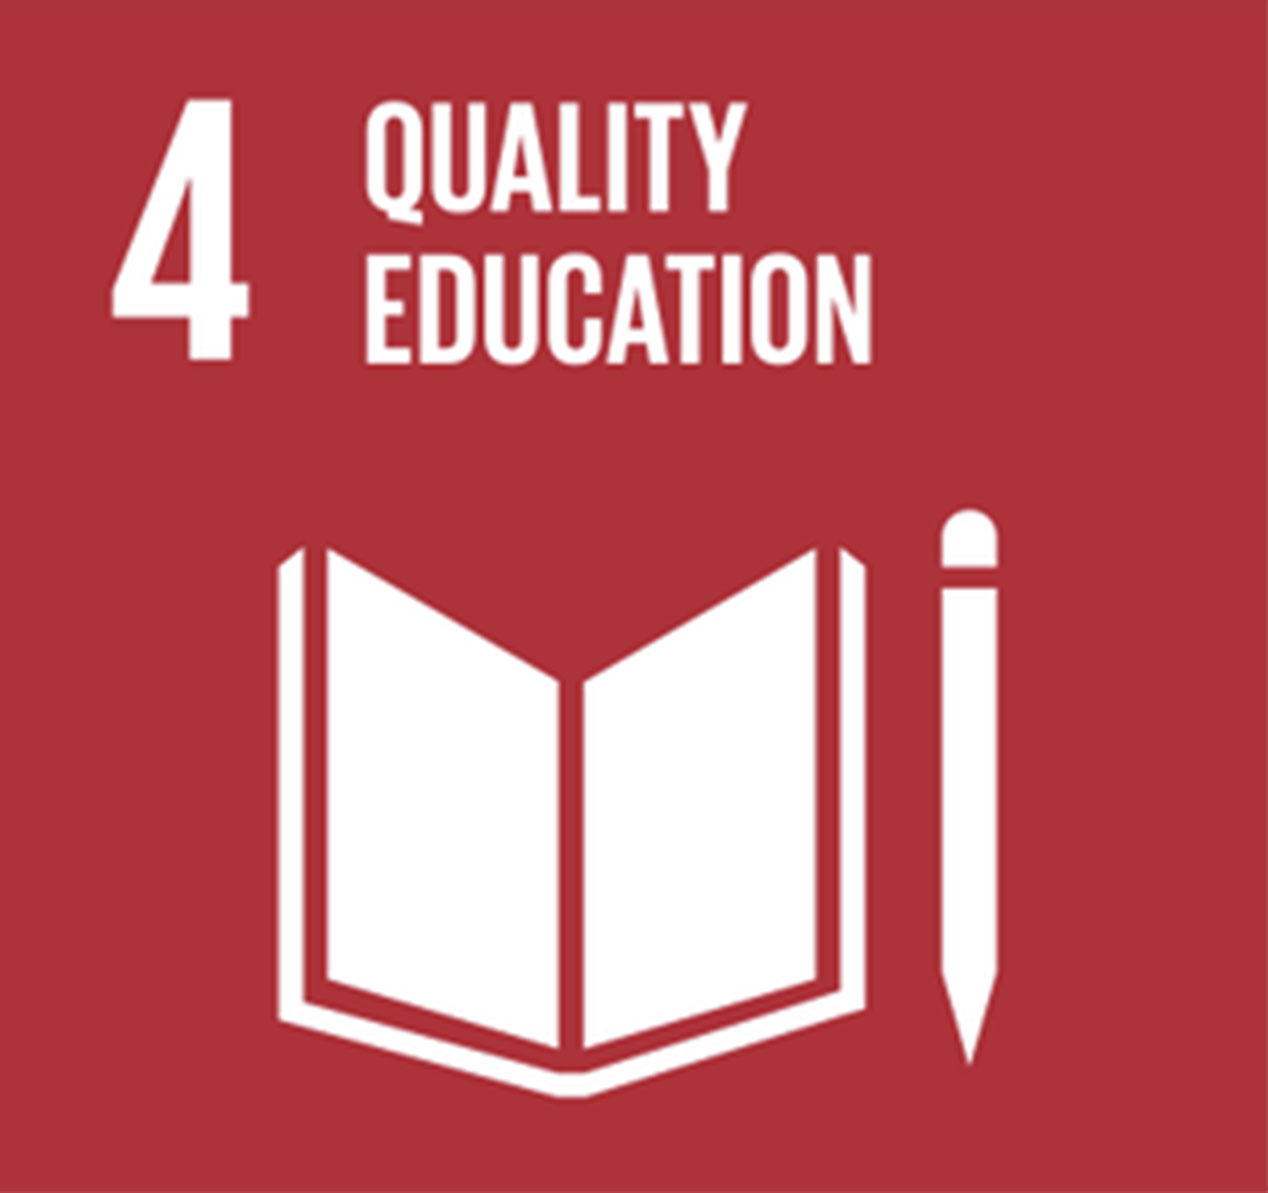 Quality Education - #4.jpg